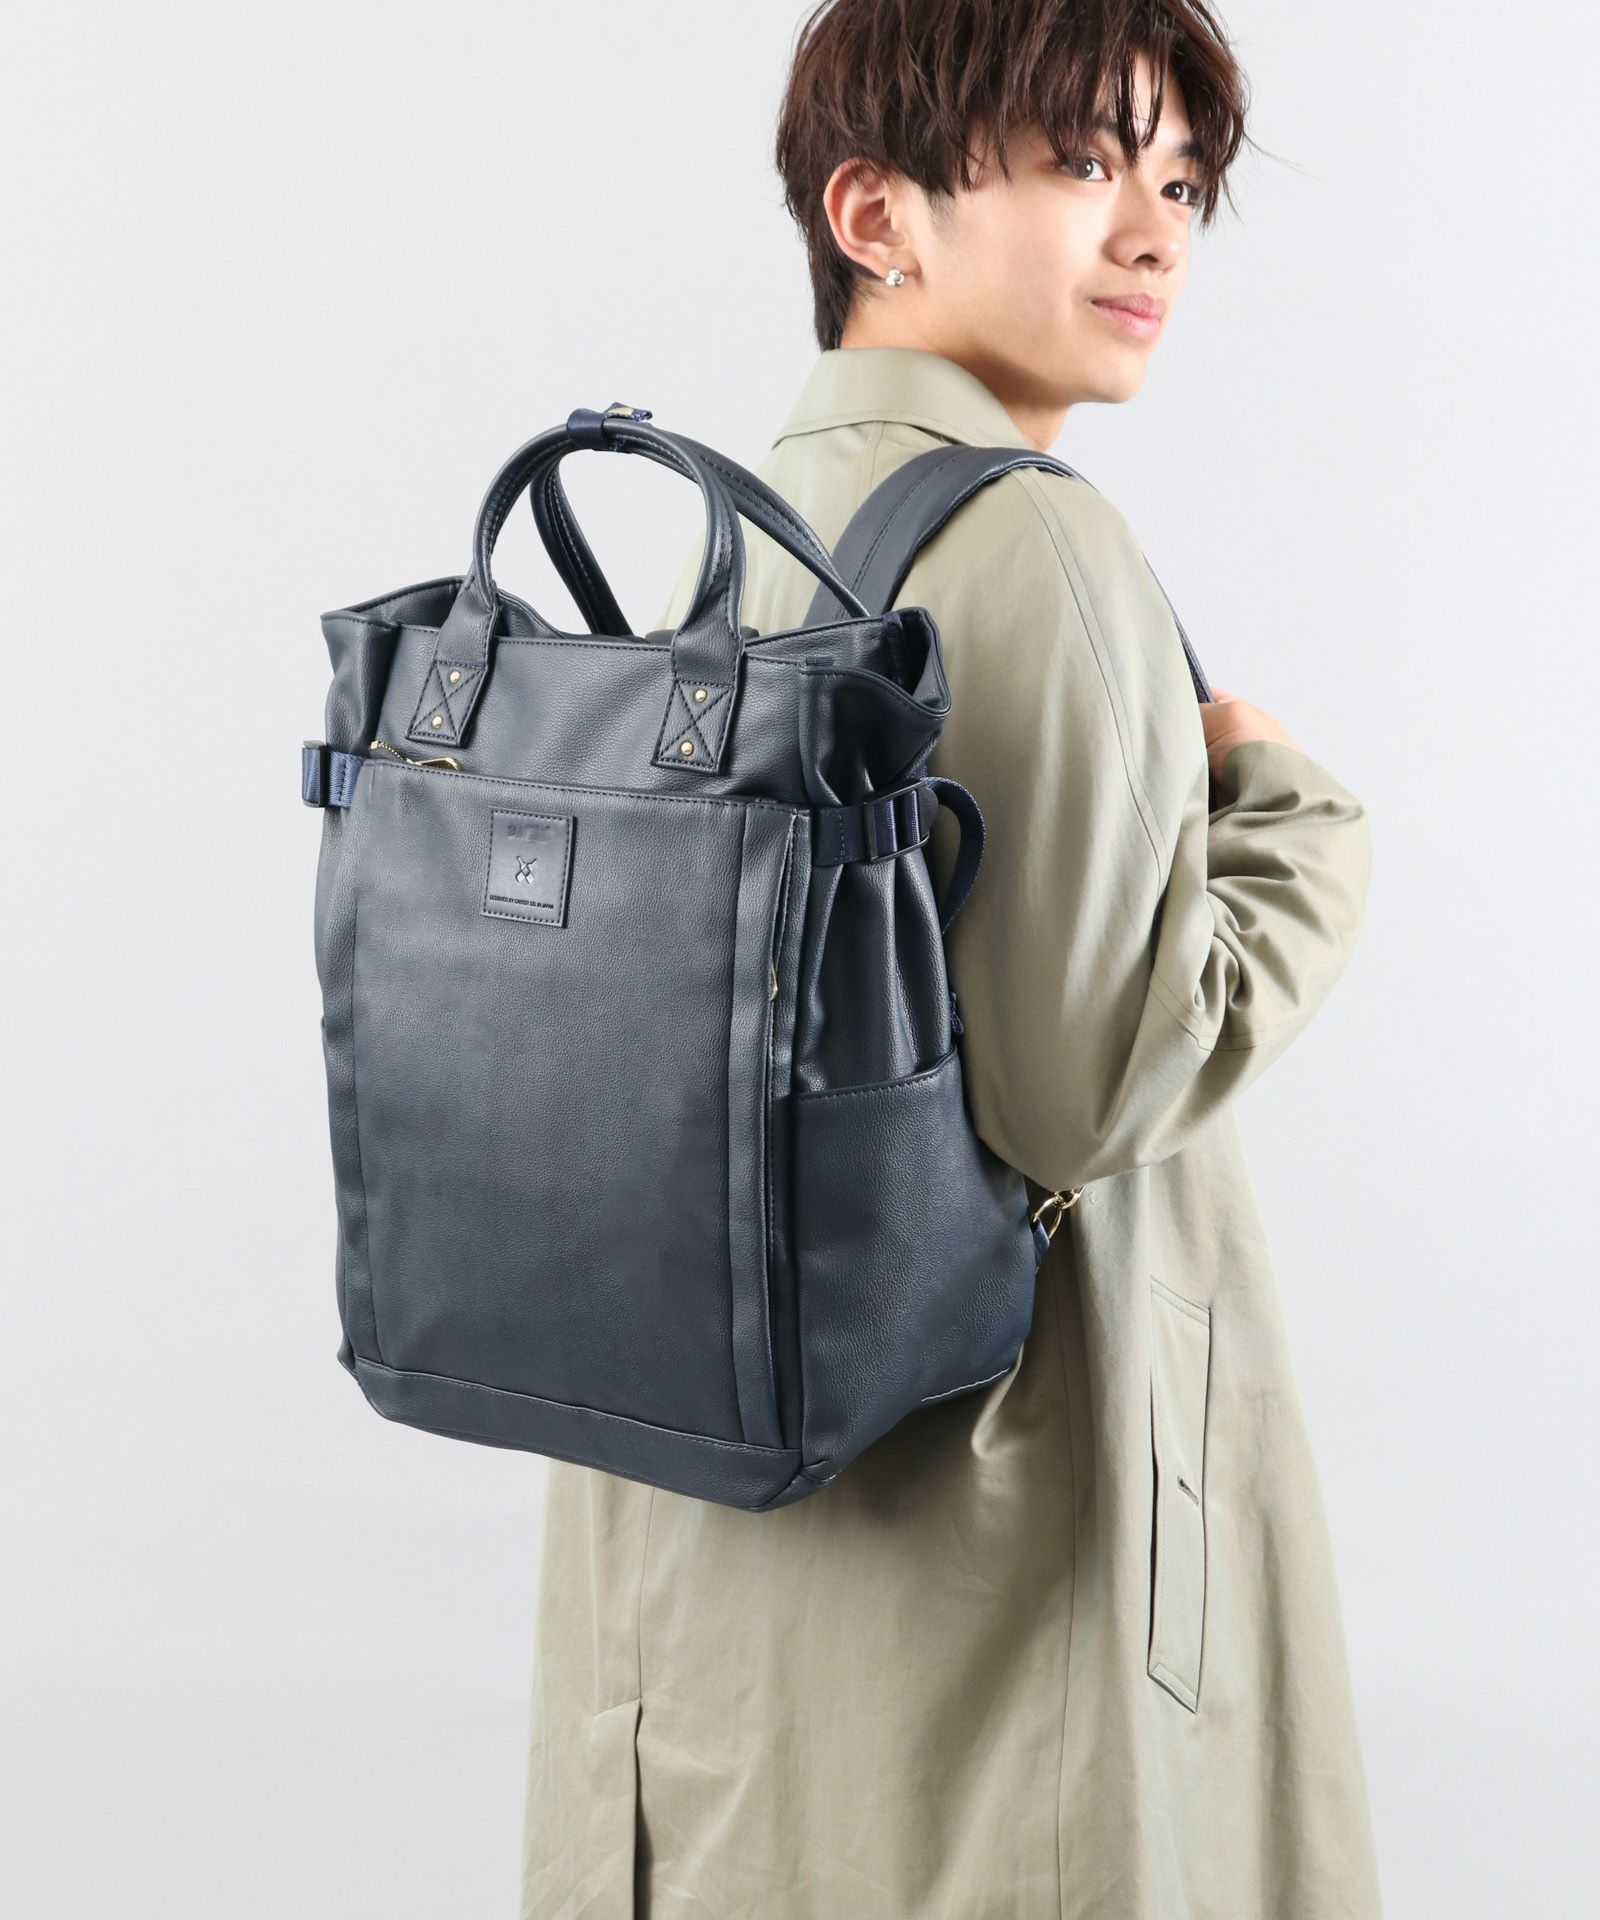 日本乐天双肩包PU皮革商务电脑男包旅行背包bags书包女包backpack|ms